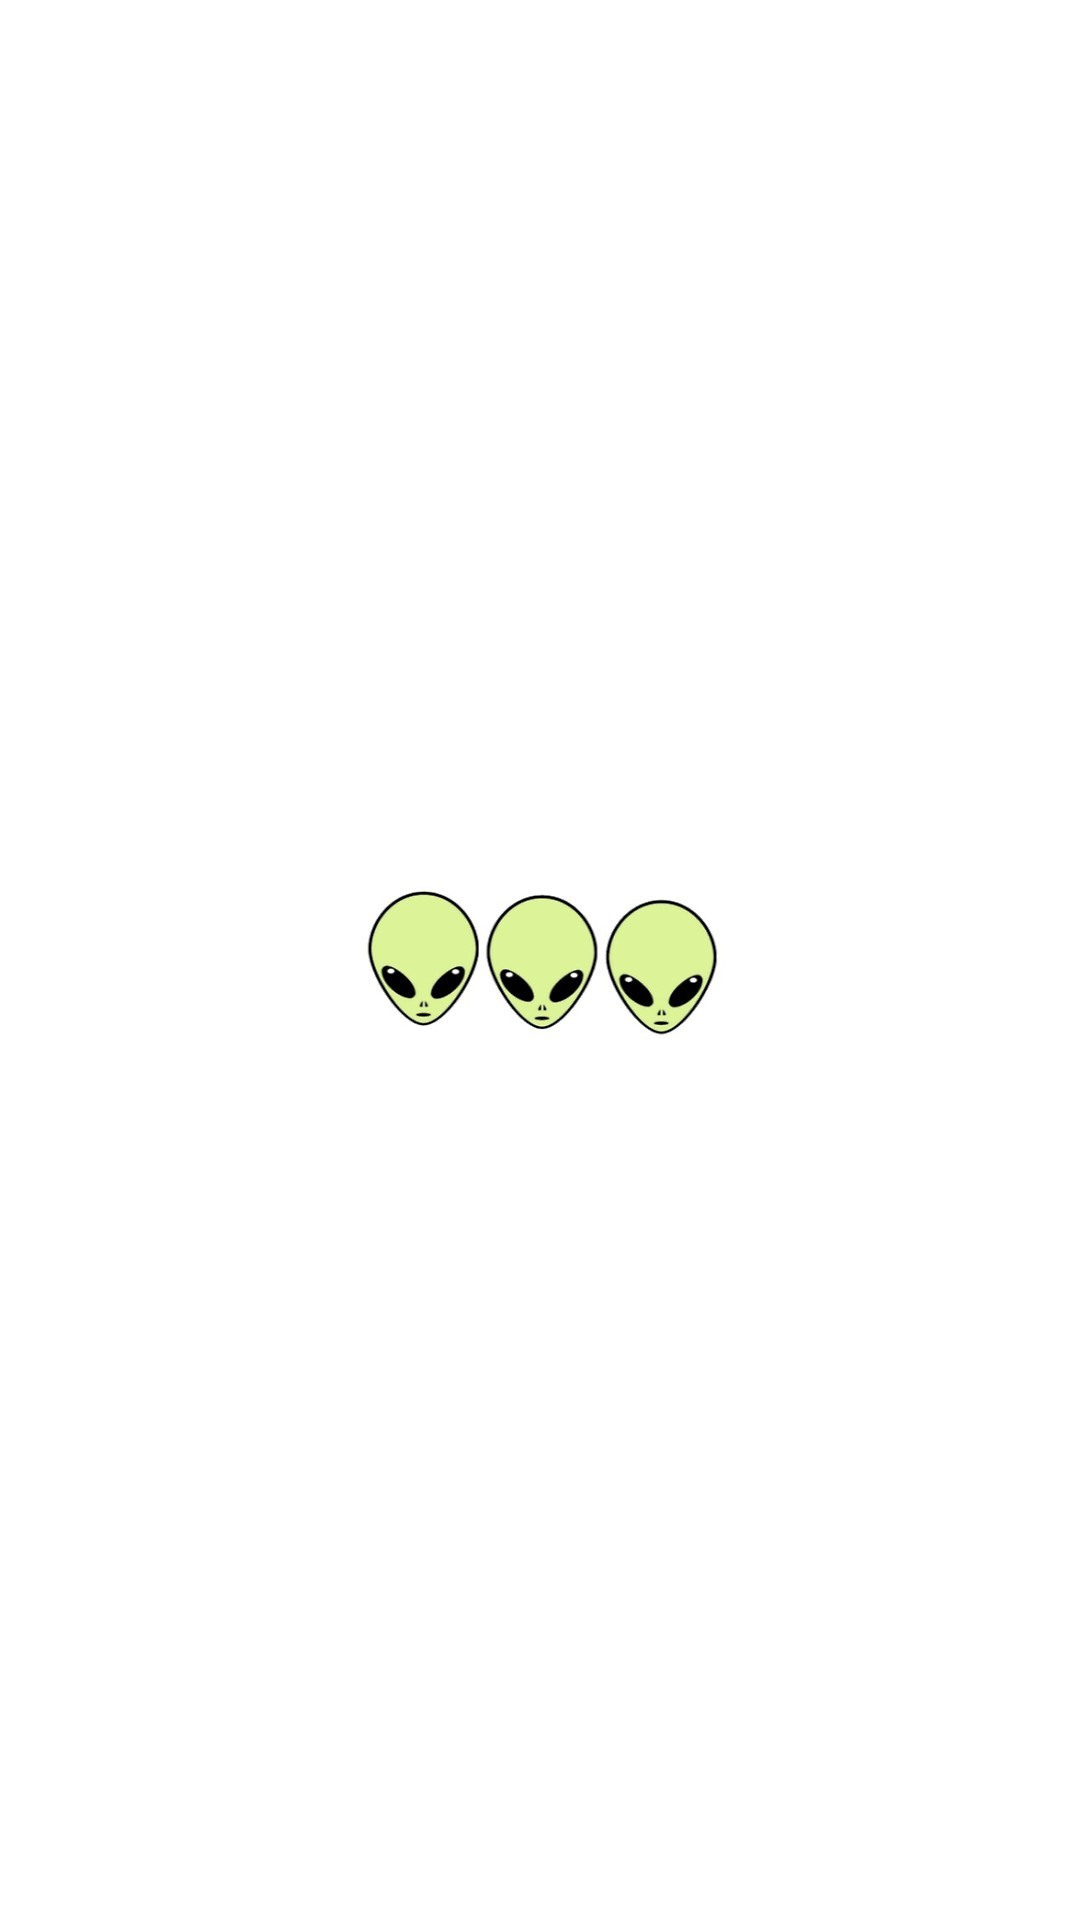 fondos-de-pantalla-kulz: Aliens 👽 - iPhone art